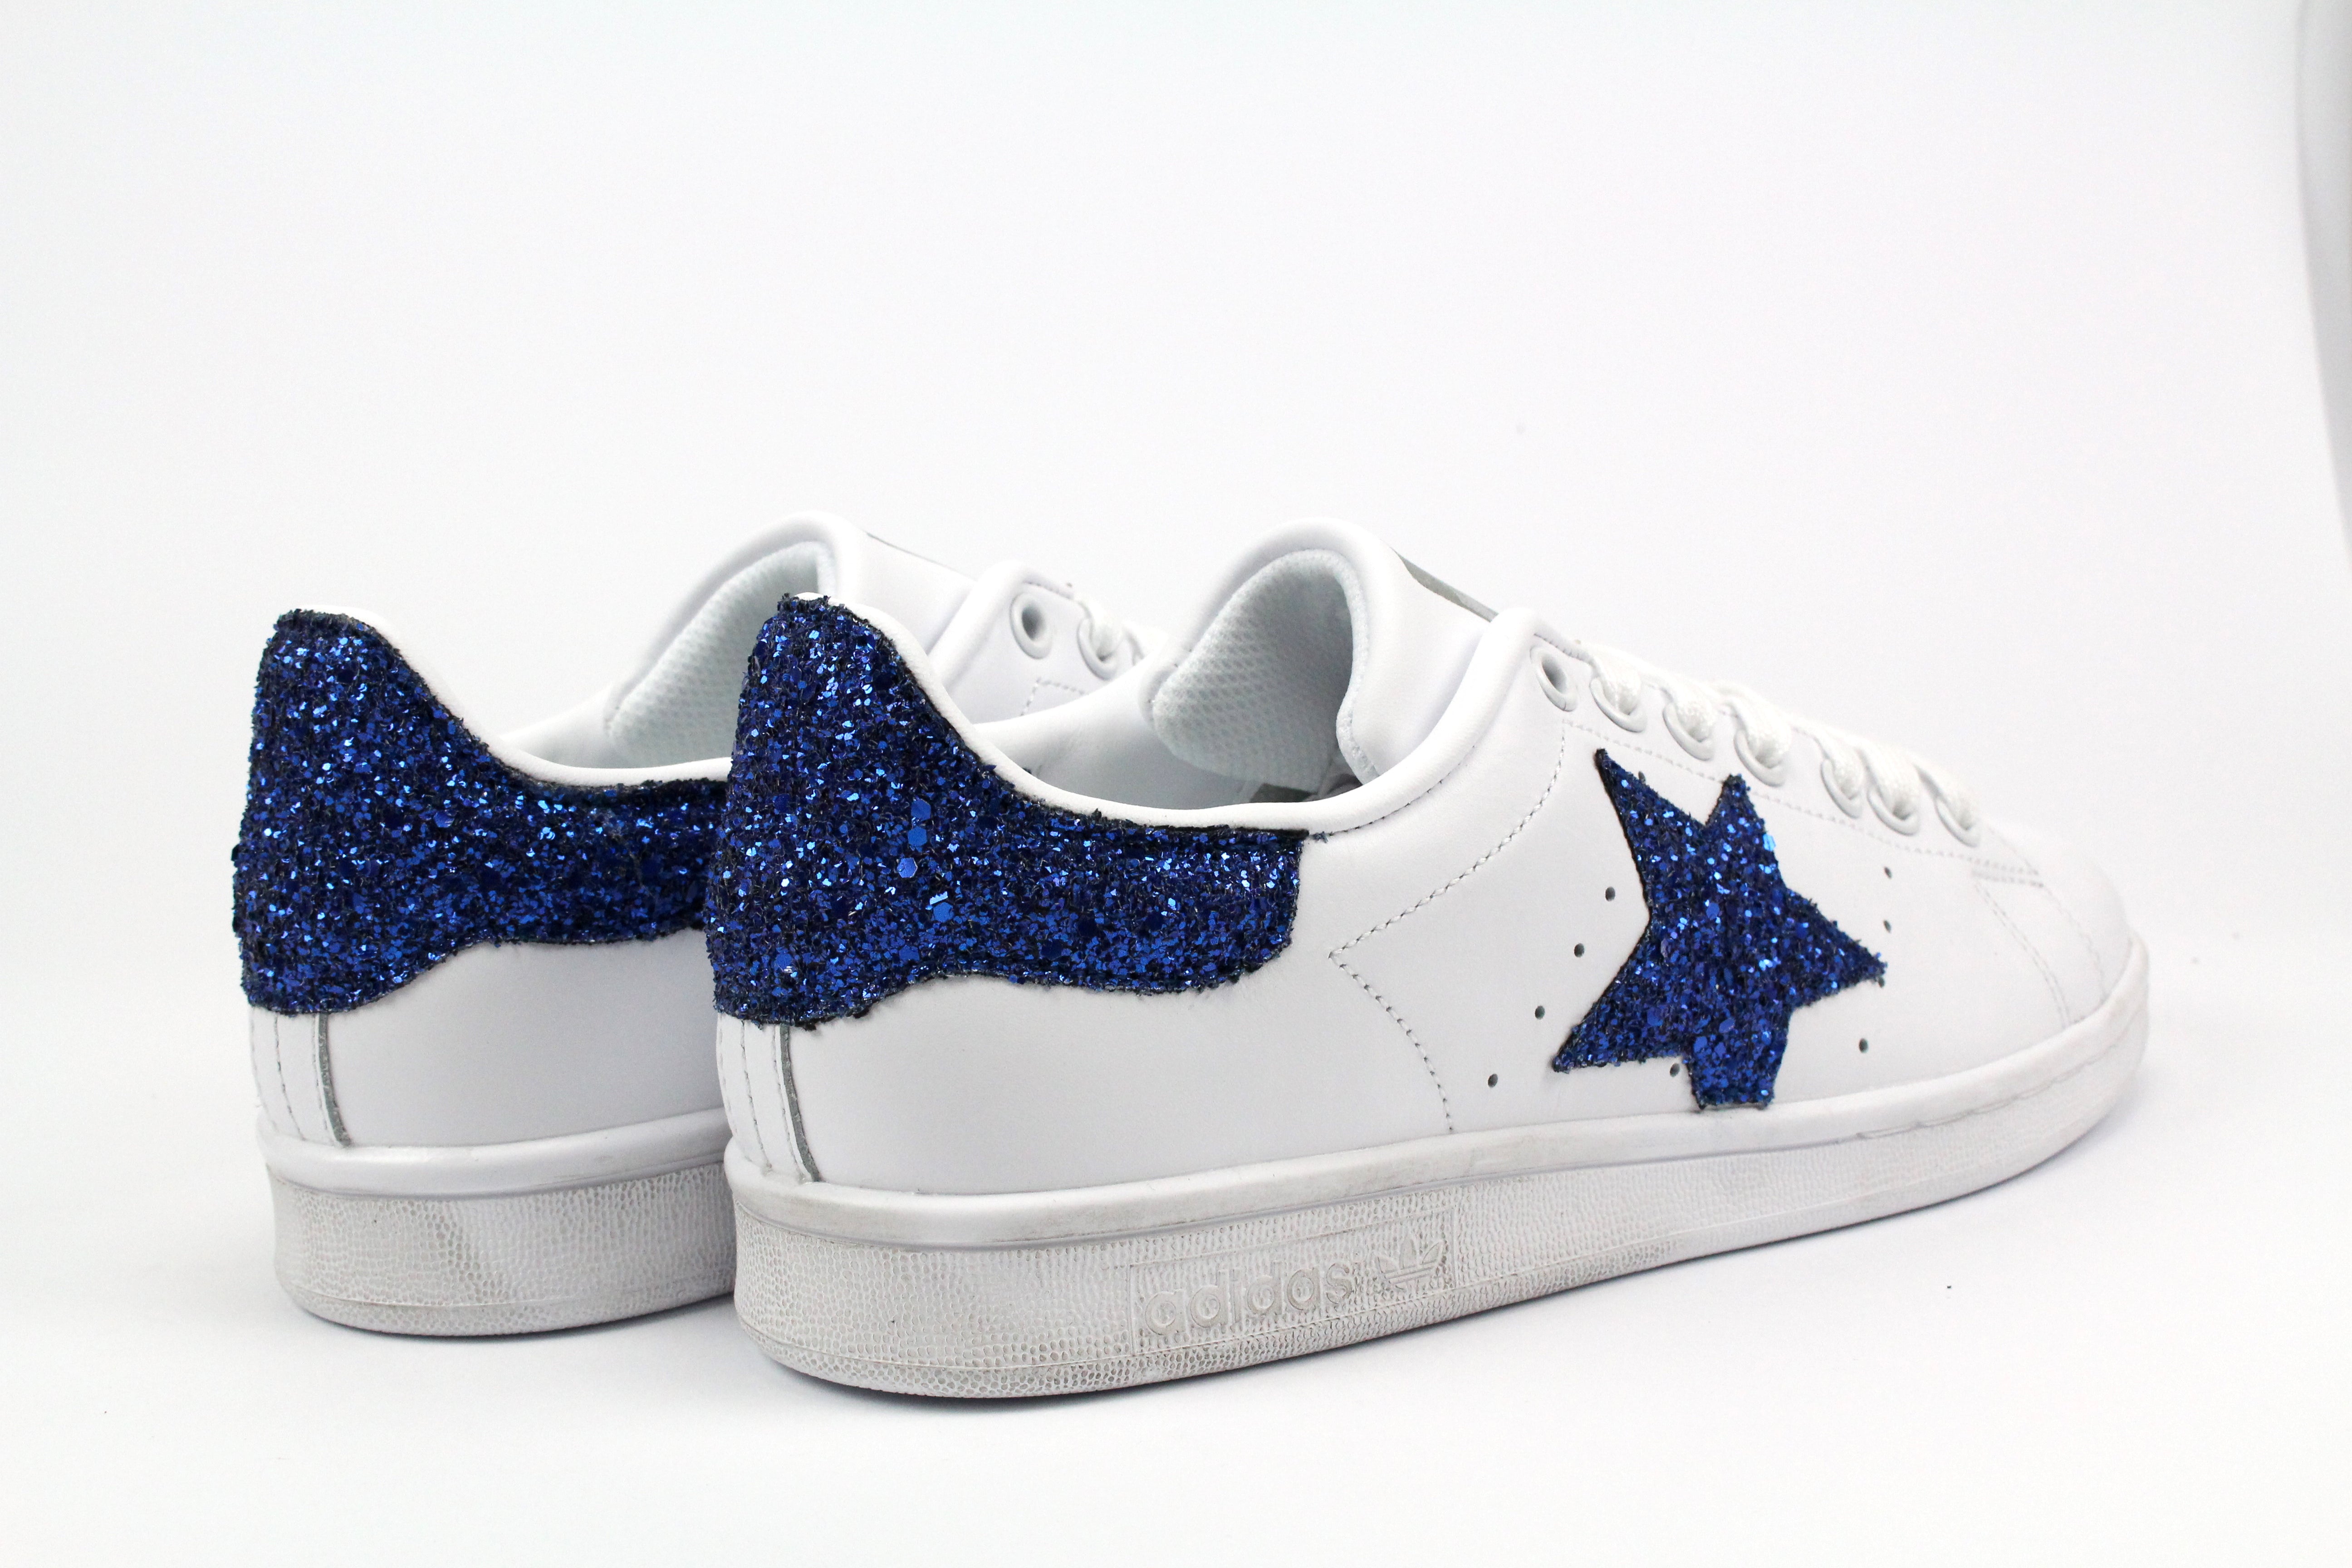 Adidas Stansmith personalizzata con stella glitter bluette